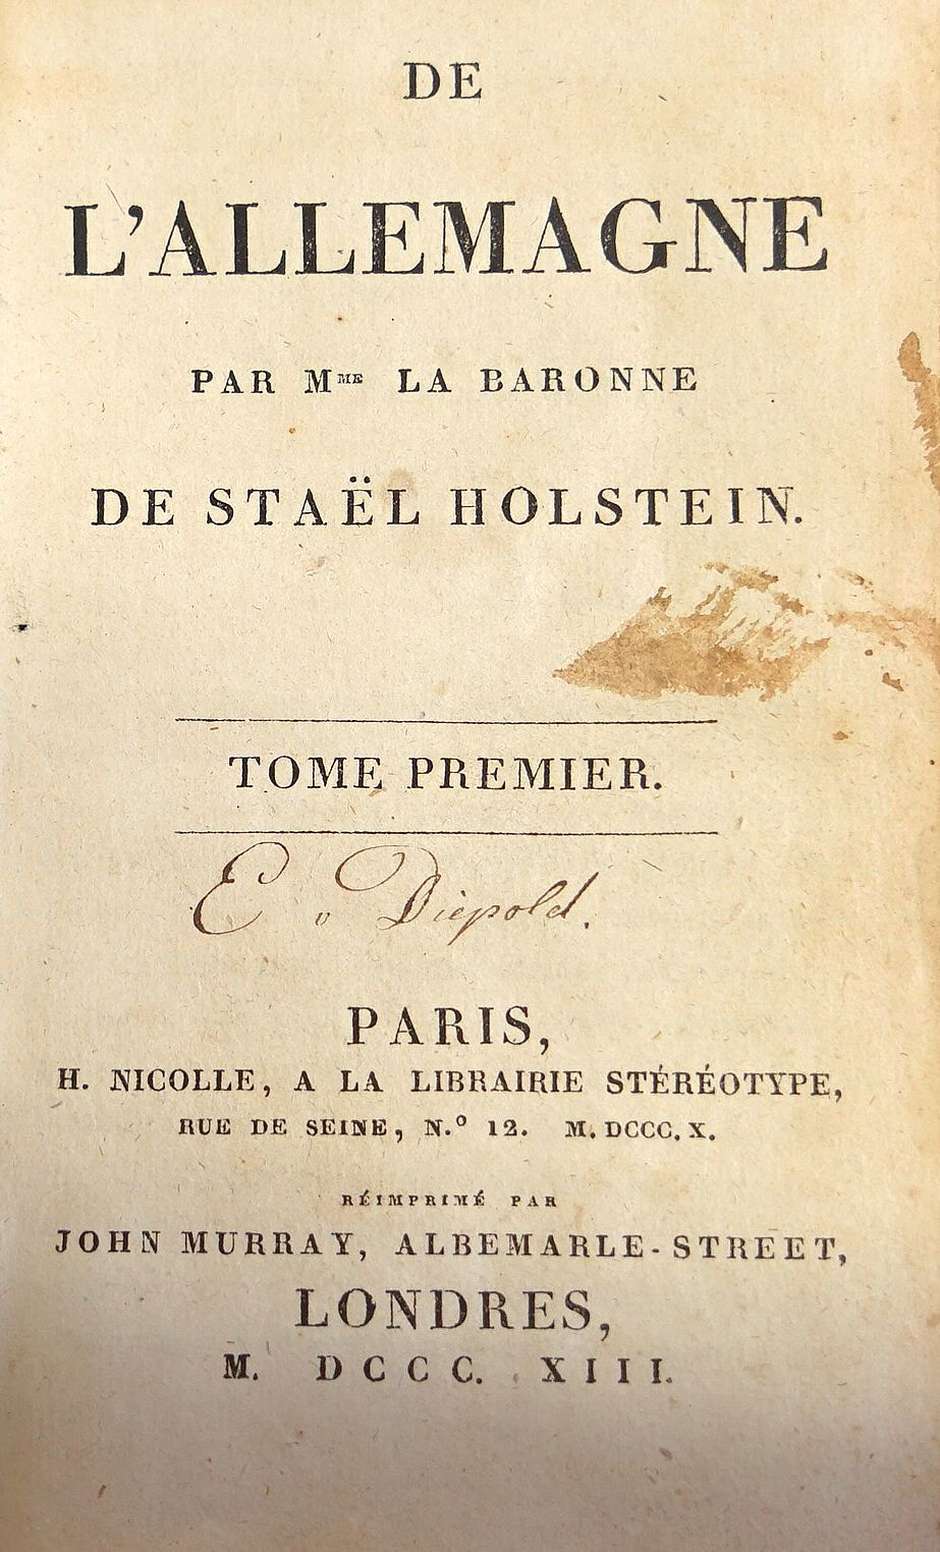 Lot 2167, Auction  115, Stael-Holstein, Anne-Louise-Germaine, De l'Allemagne. Eigentliche Erstausgabe 